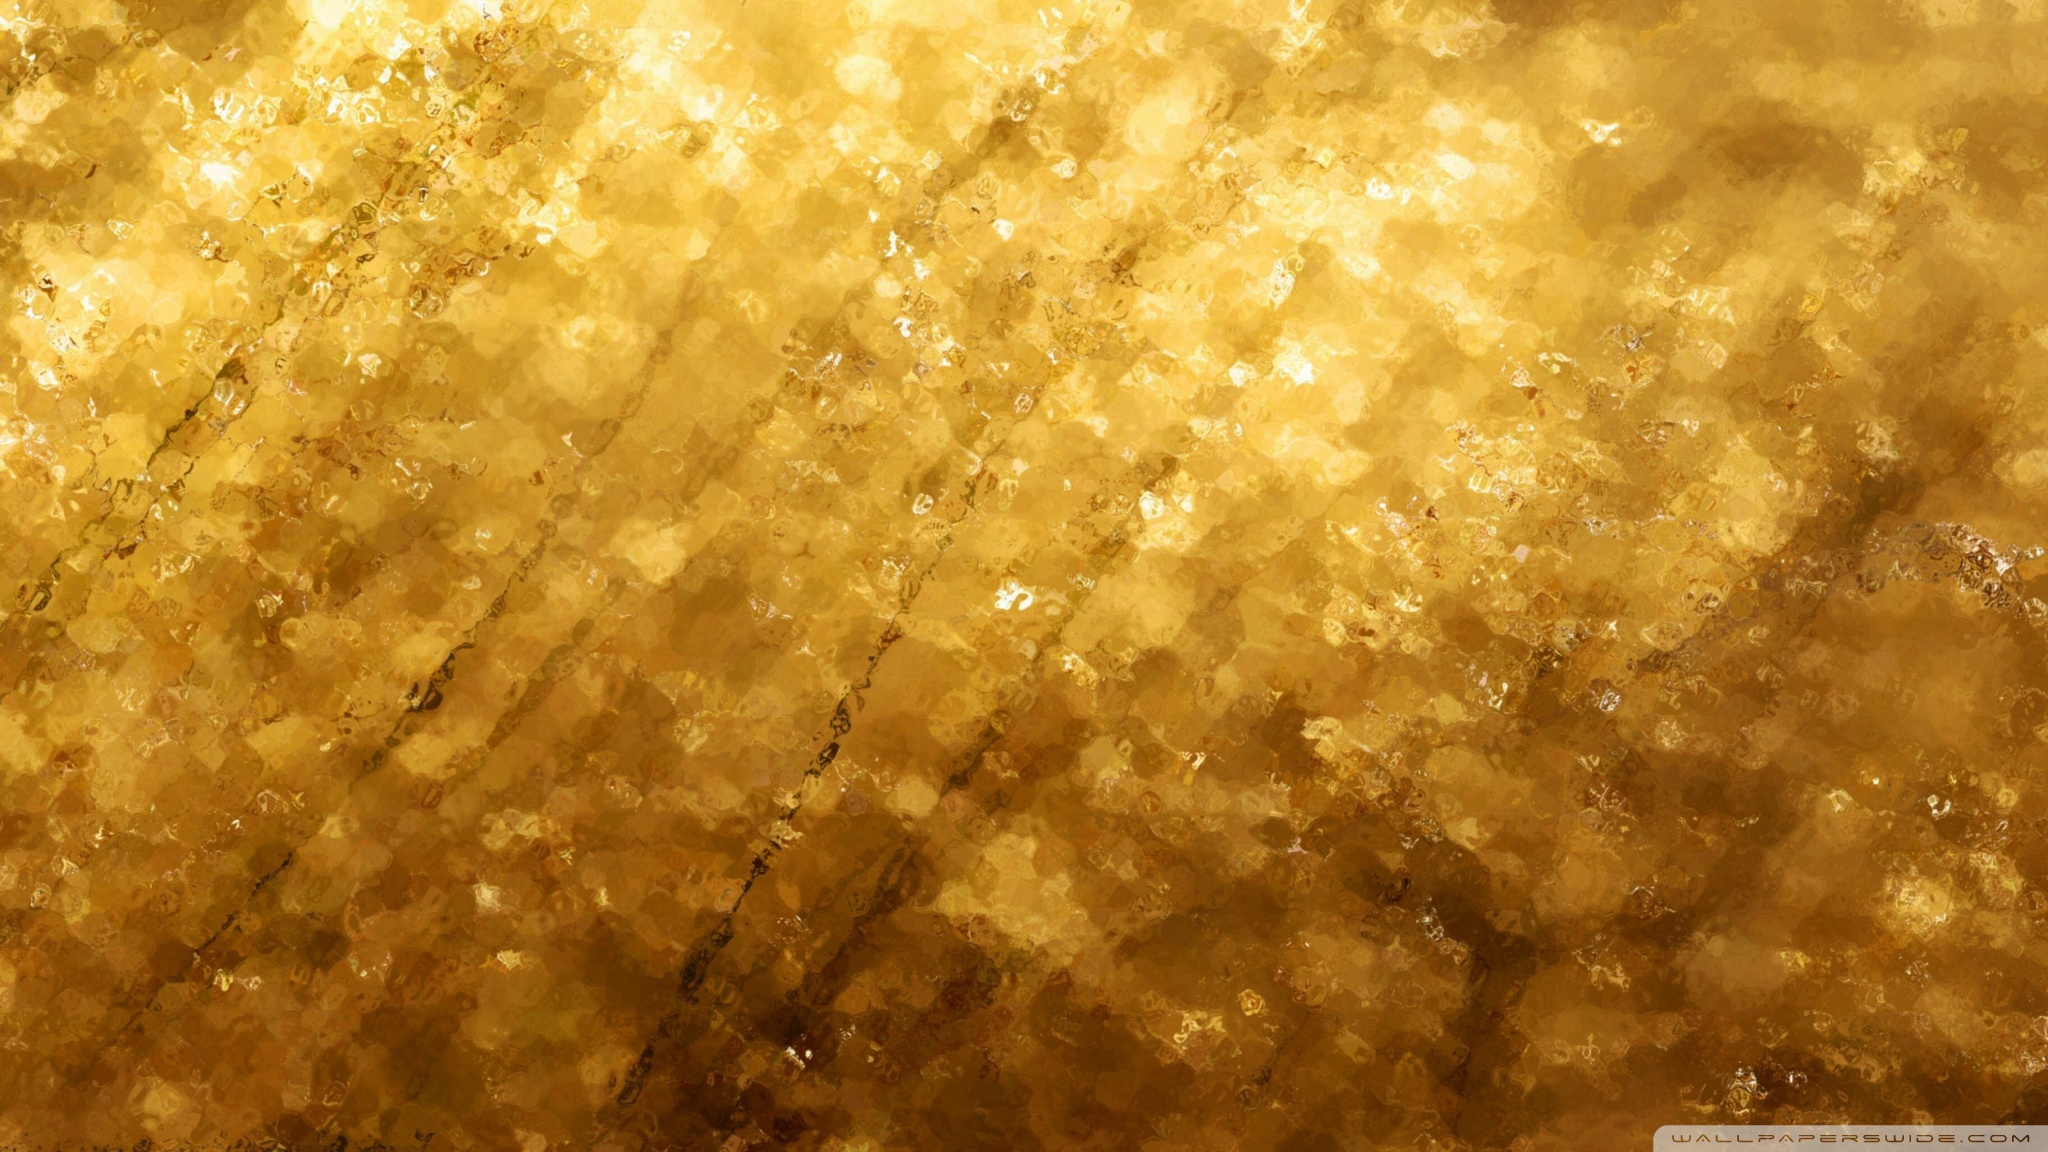 Chất liệu vàng lấp lánh trên bề mặt của hình ảnh này khiến các chi tiết trở nên sống động và rực rỡ hơn bao giờ hết. Hãy bấm vào đây để chiêm ngưỡng tinh hoa vàng đỉnh cao!